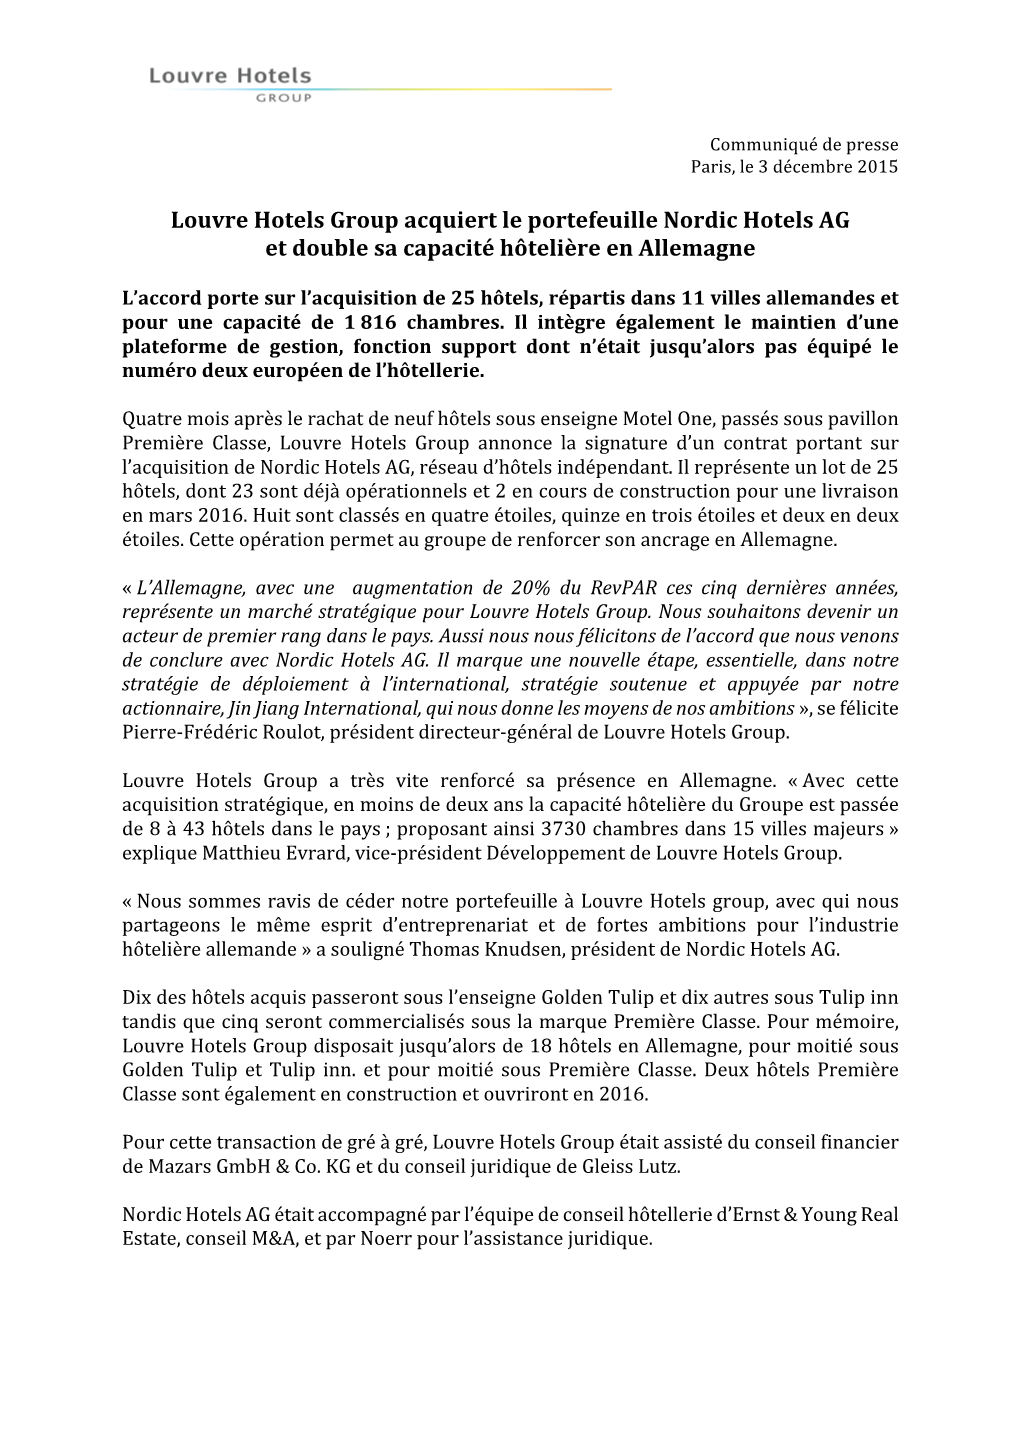 Louvre Hotels Group Acquiert Le Portefeuille Nordic Hotels AG Et Double Sa Capacité Hôtelière En Allemagne